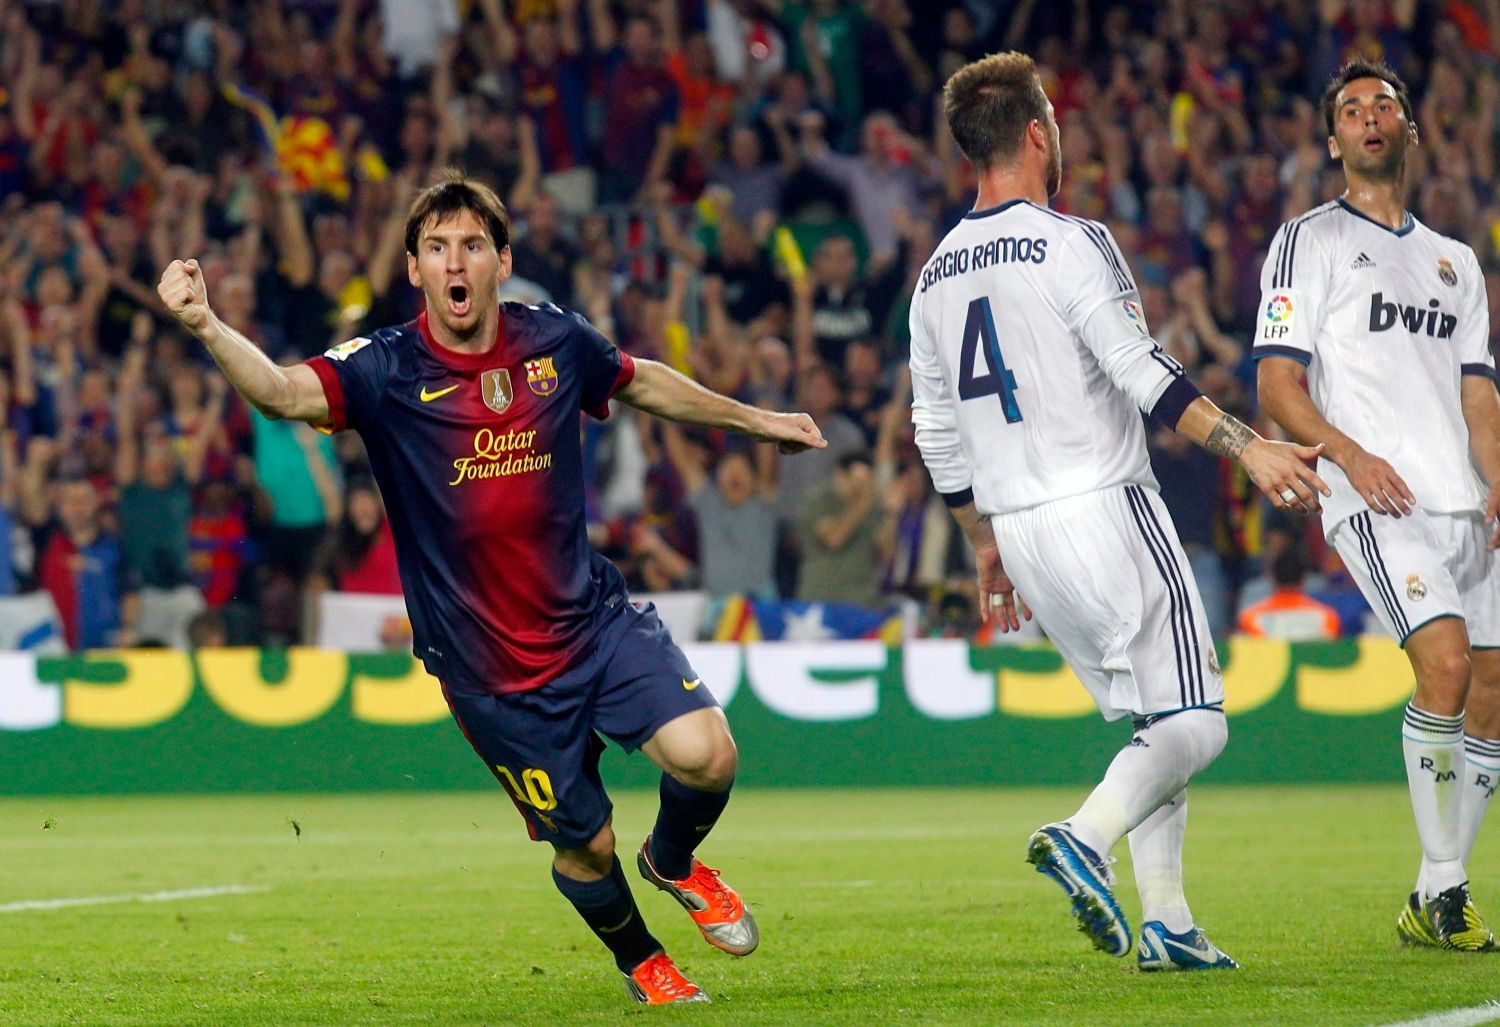 Fotbalista Barcelony Lionel Messi (vlevo) slaví gól za zády Sergia Ramose a Alvara Arbeloy v utkání Primera División proti Realu Madrid.